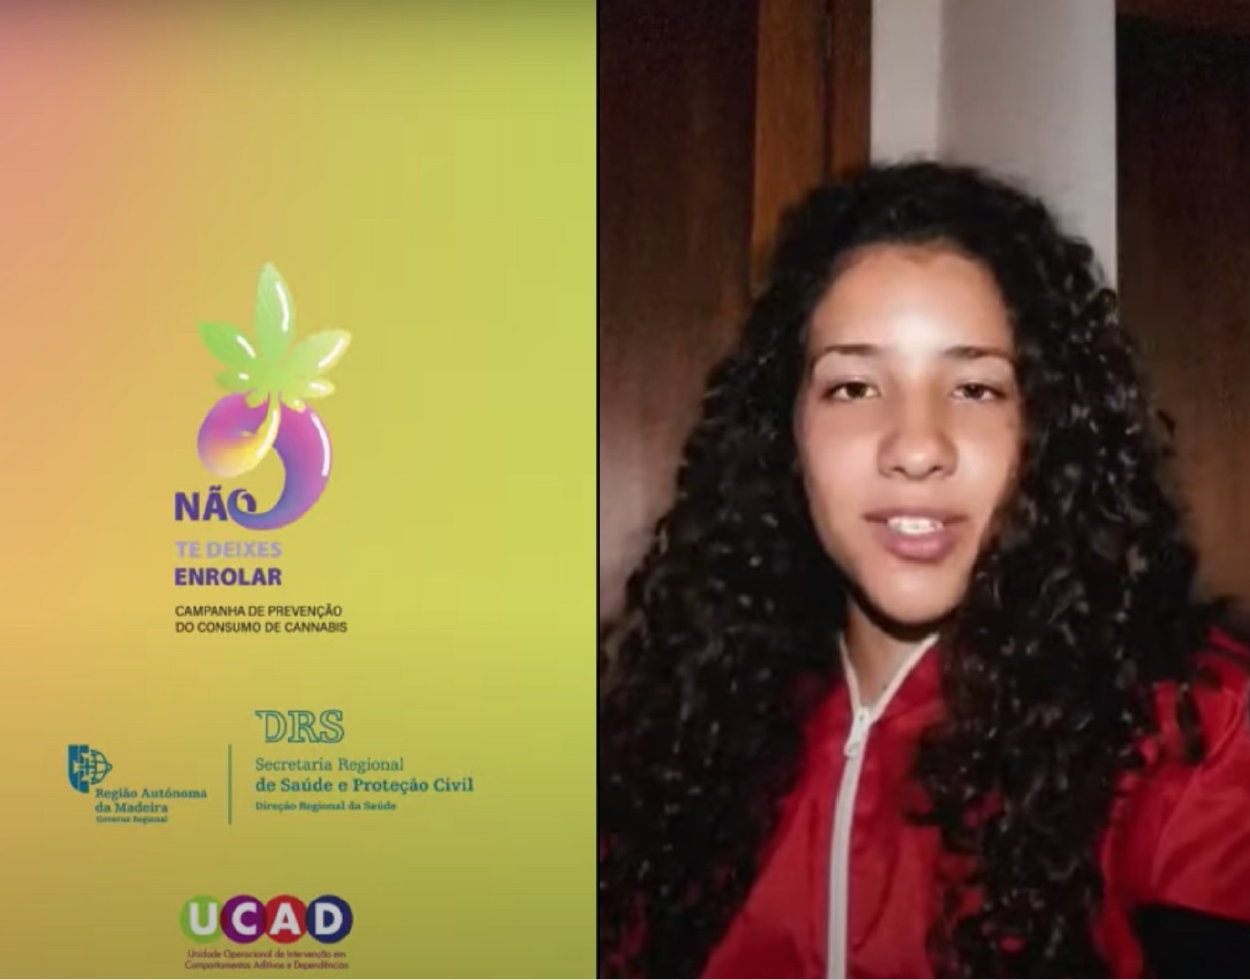 Atleta madeirense, Luana Miriam, associa-se à campanha de sensibilização contra o consumo de canábis